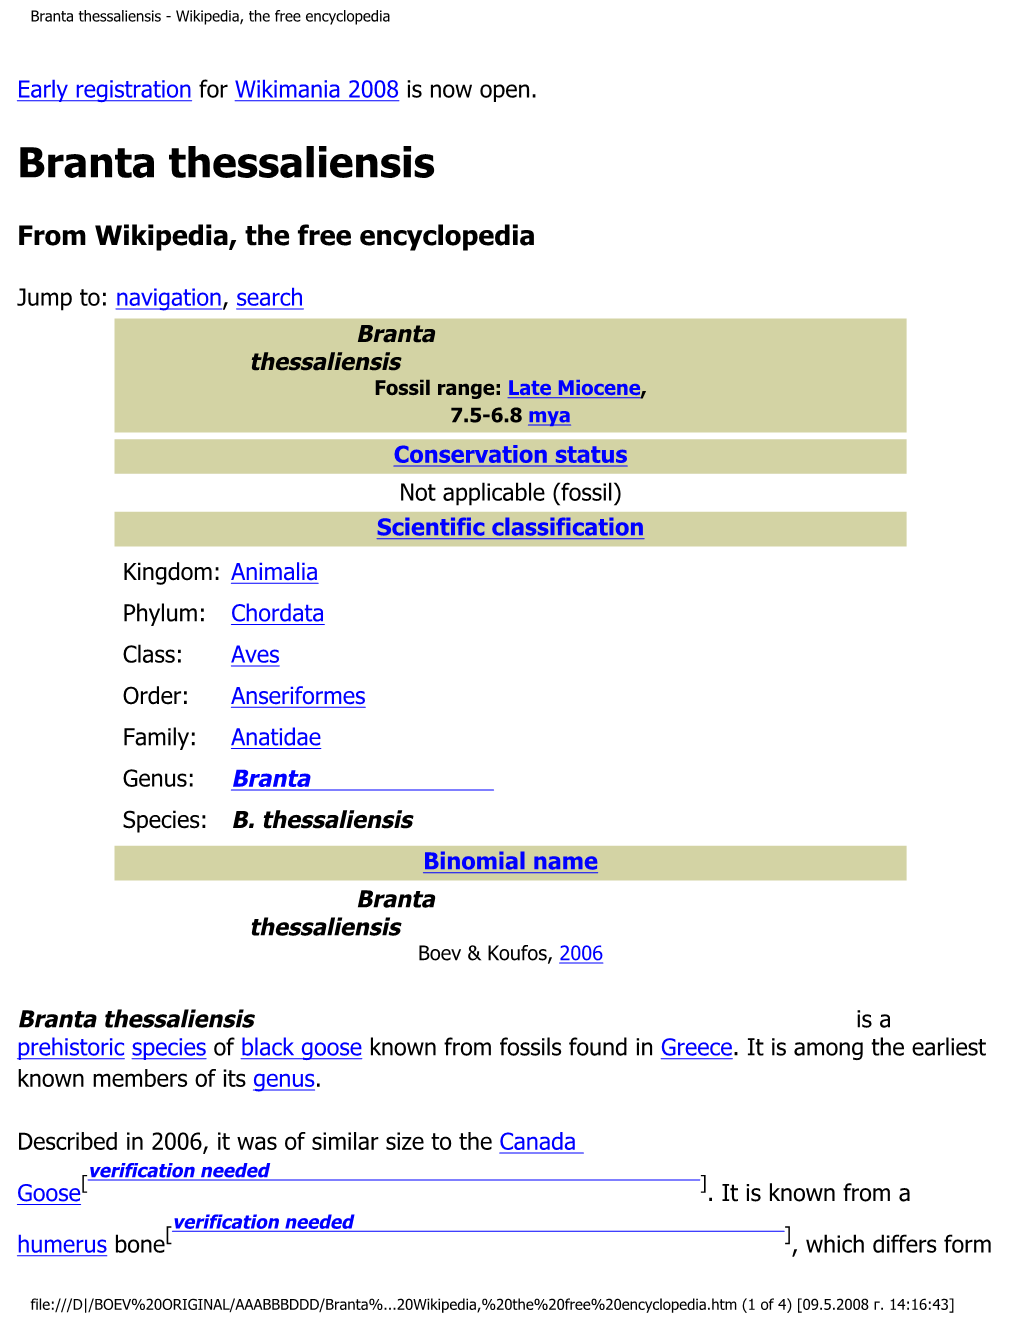 Branta Thessaliensis - Wikipedia, the Free Encyclopedia